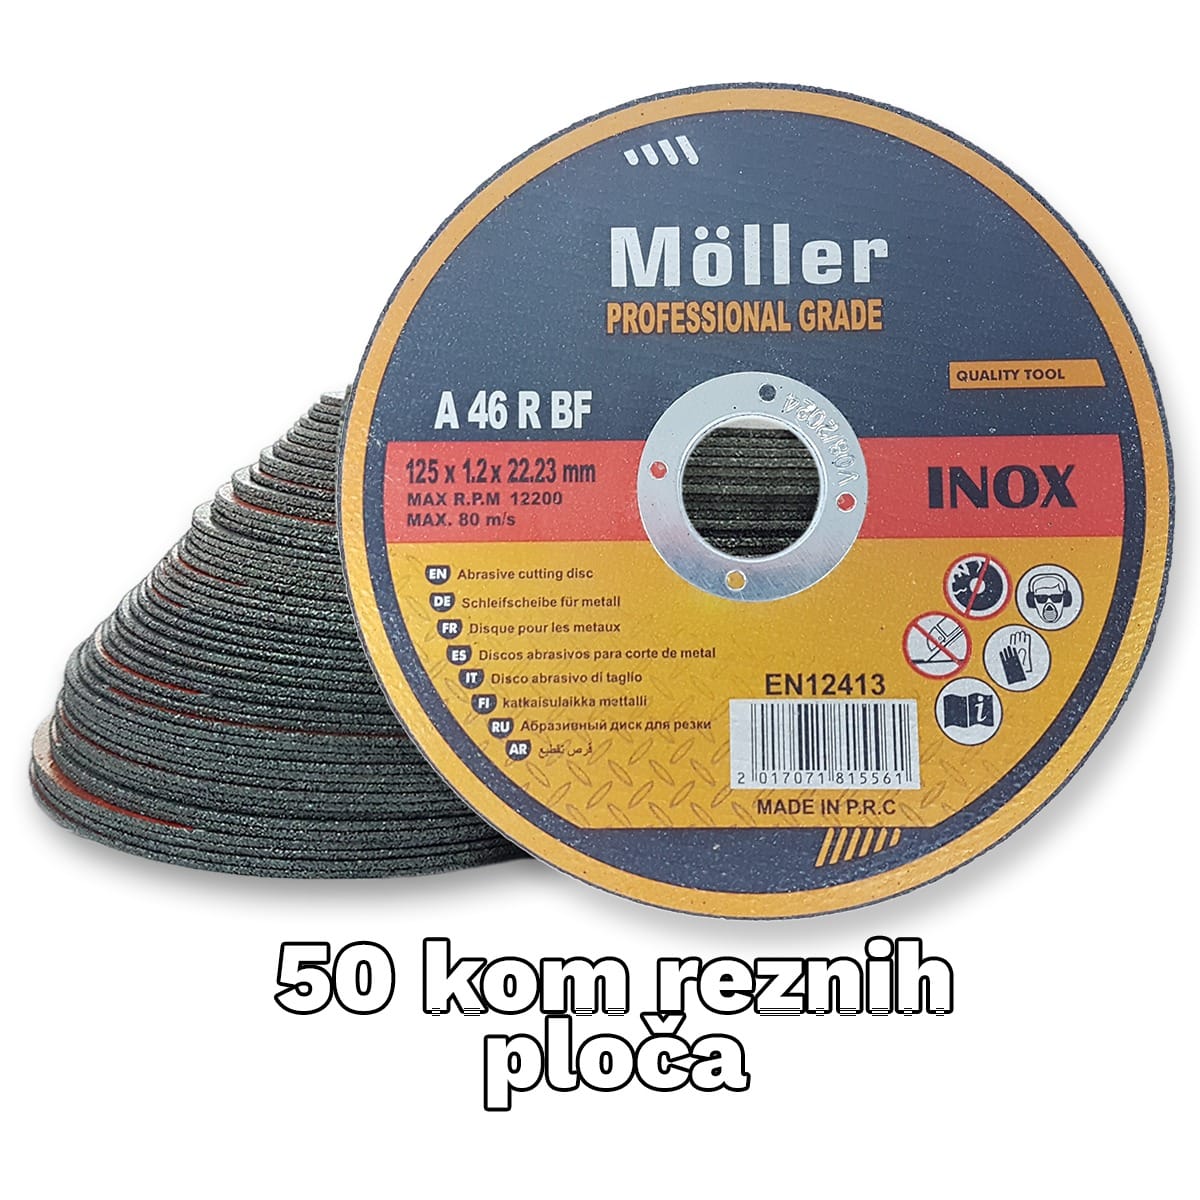 Schleifscheiben Set 50 Stücke Fiberscheiben für Flex Winkelschleifer Holz Metall 125mm Fieber